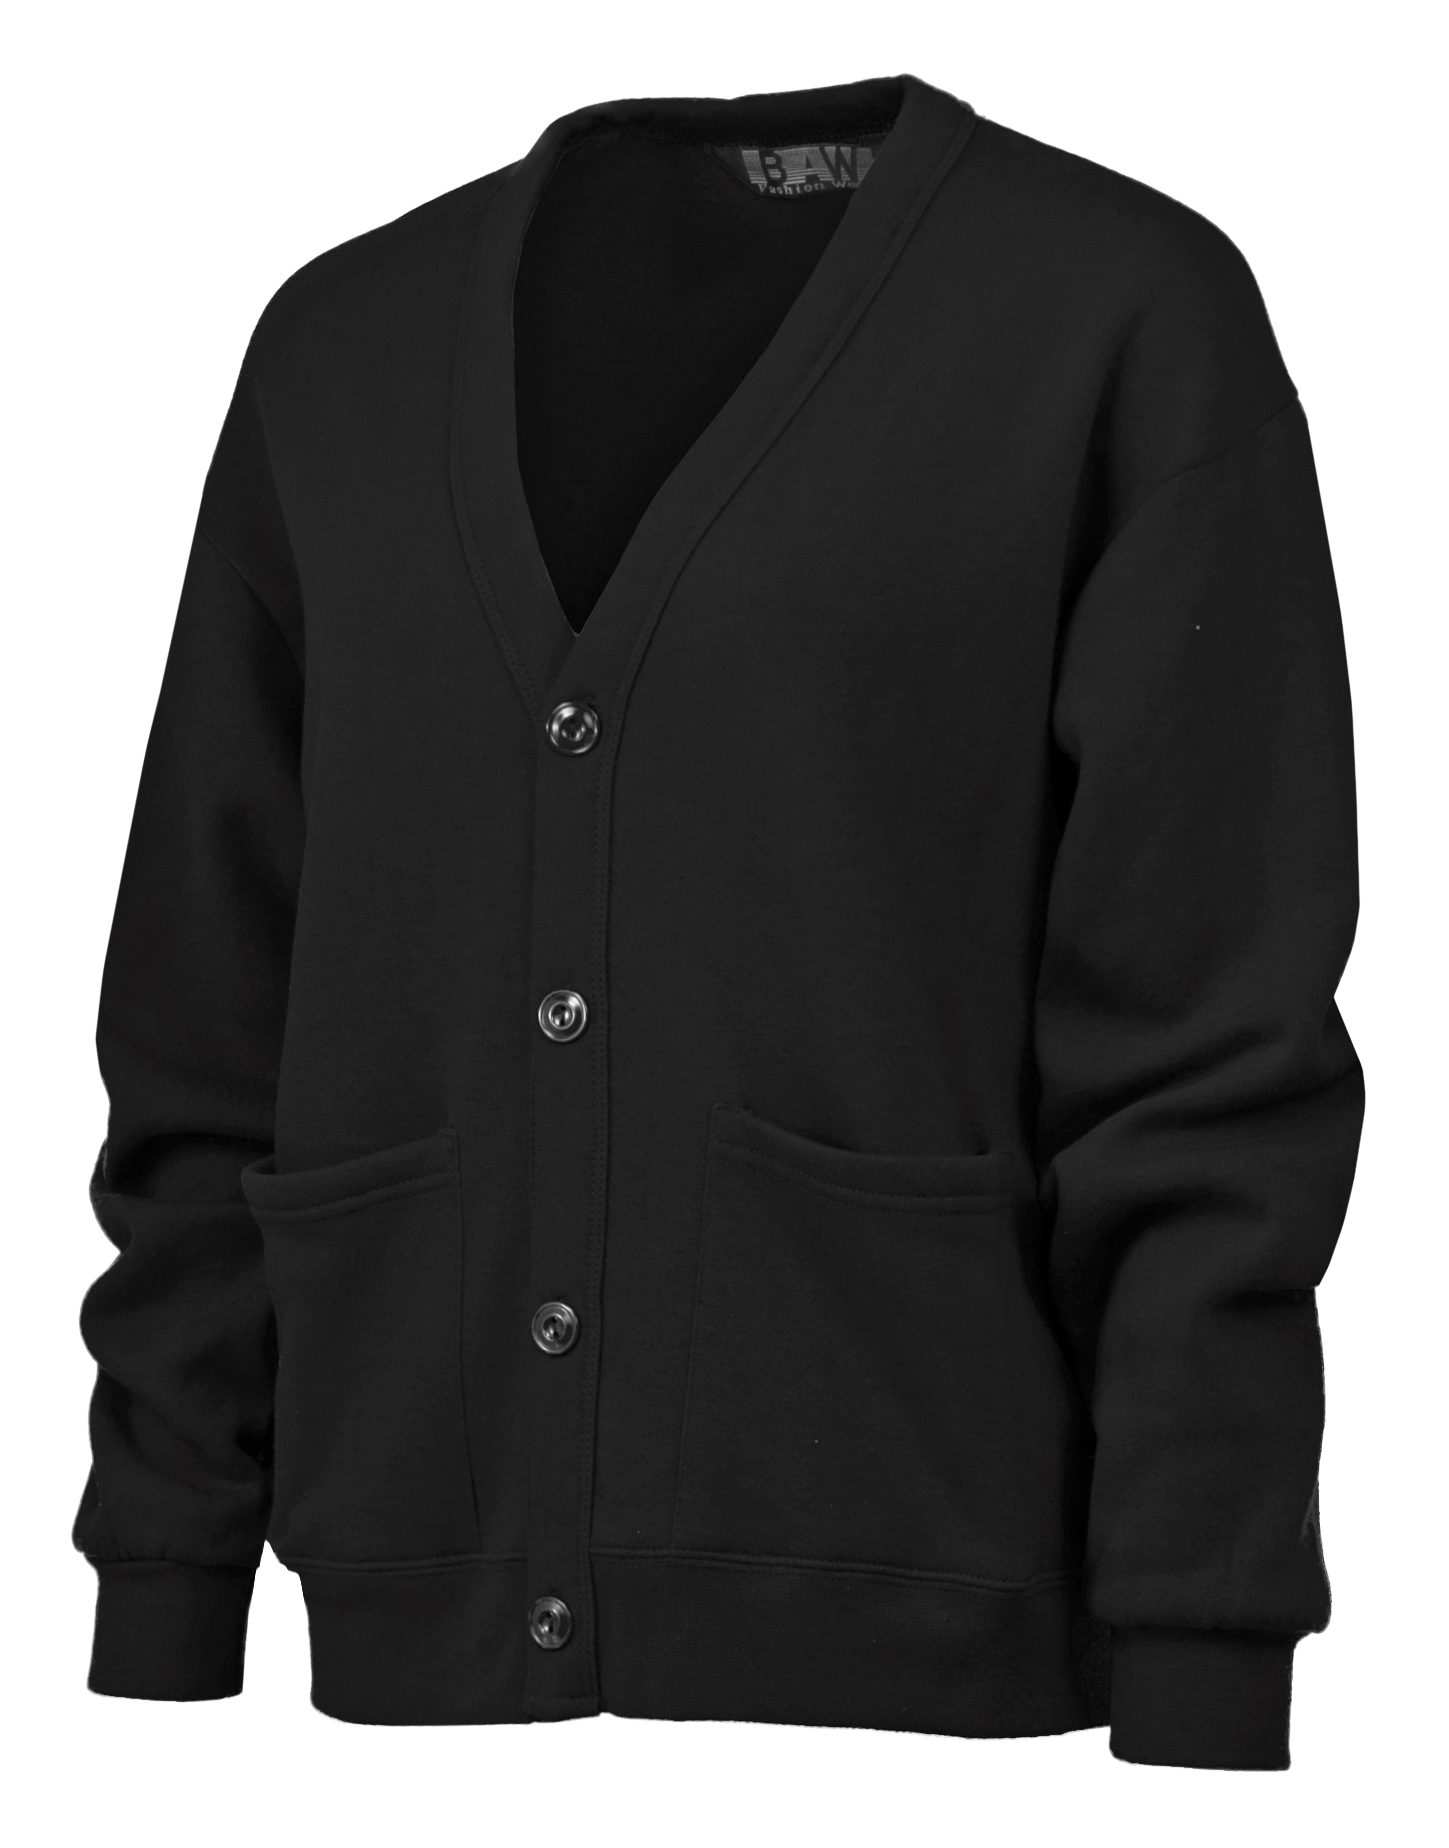 BAW Athletic Wear LC200 - Fleece Cardigan